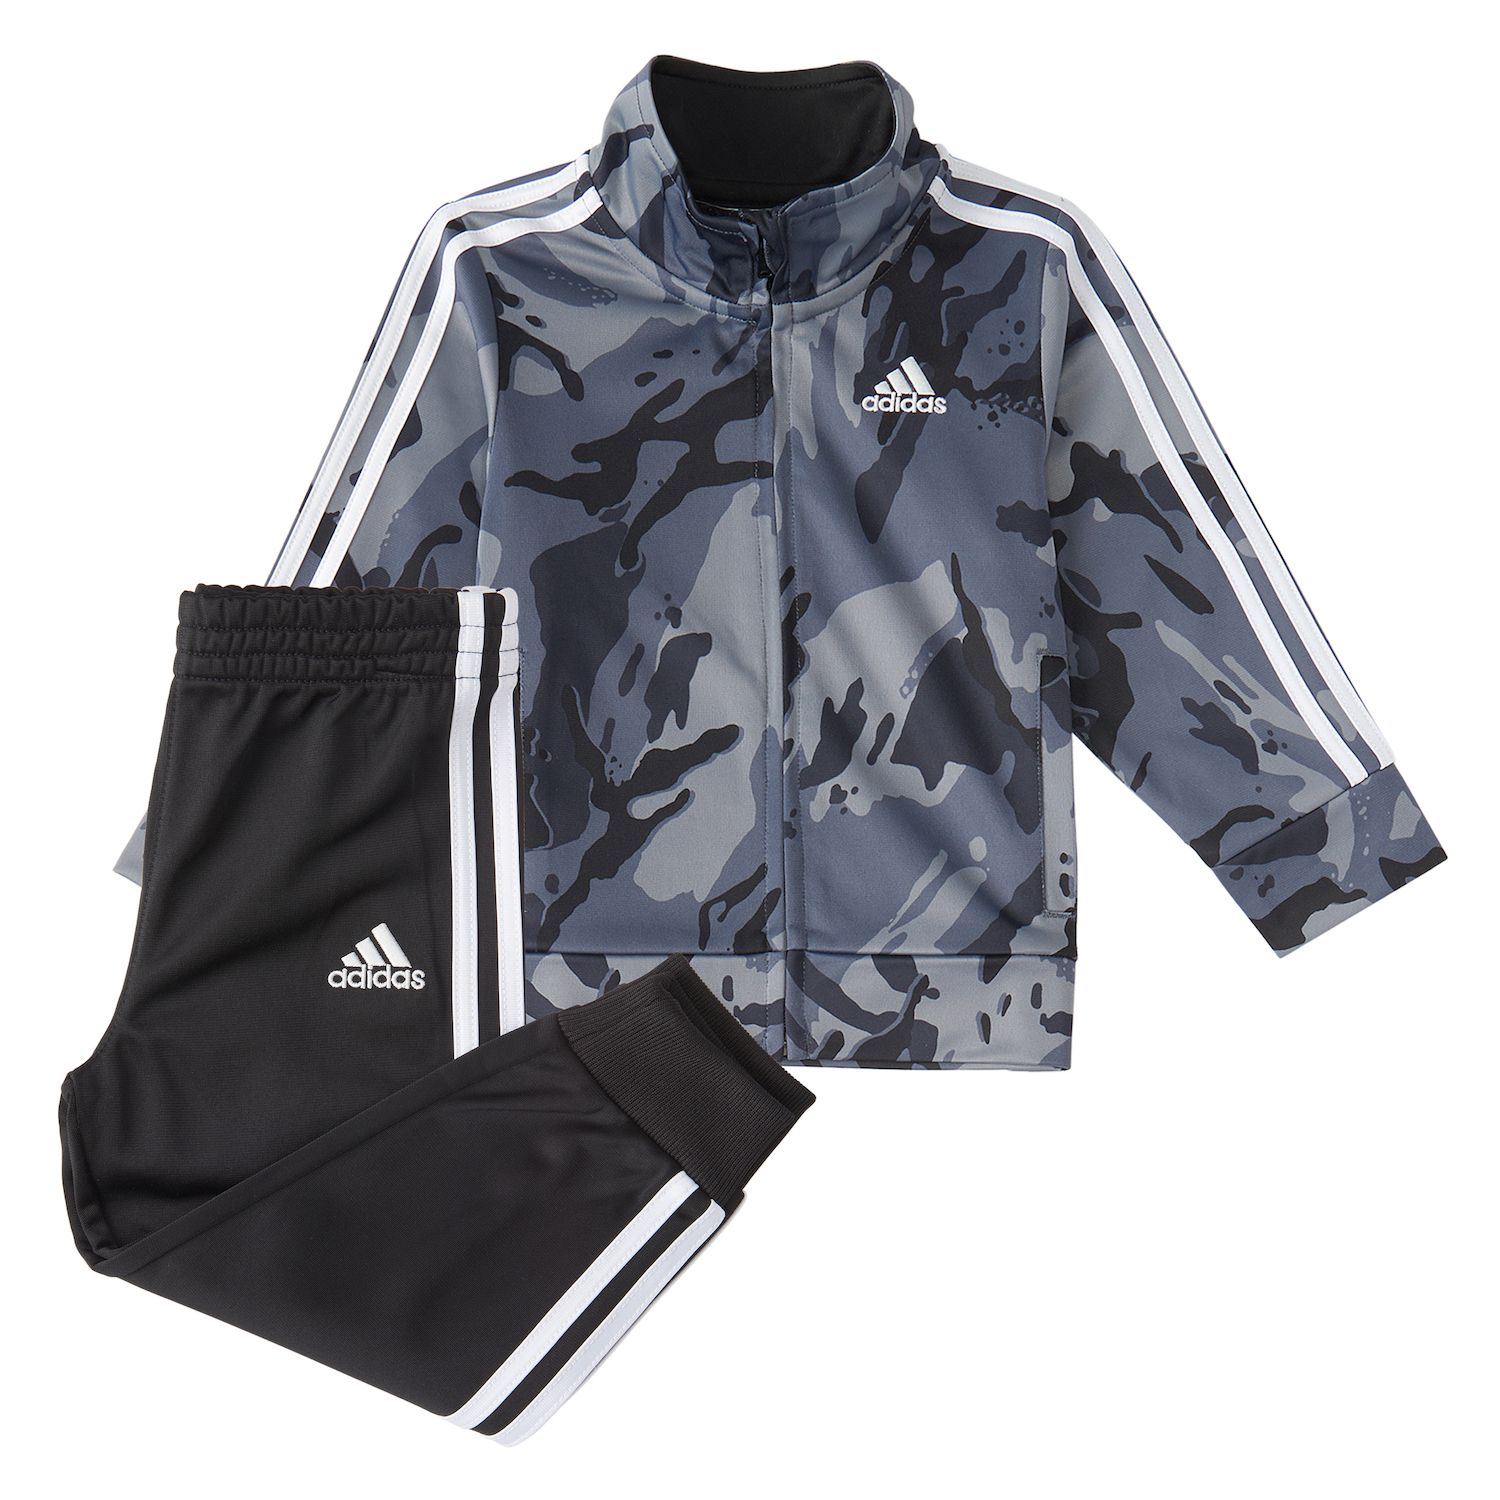 Adidas Clothing Sets, Clothing | Kohl's